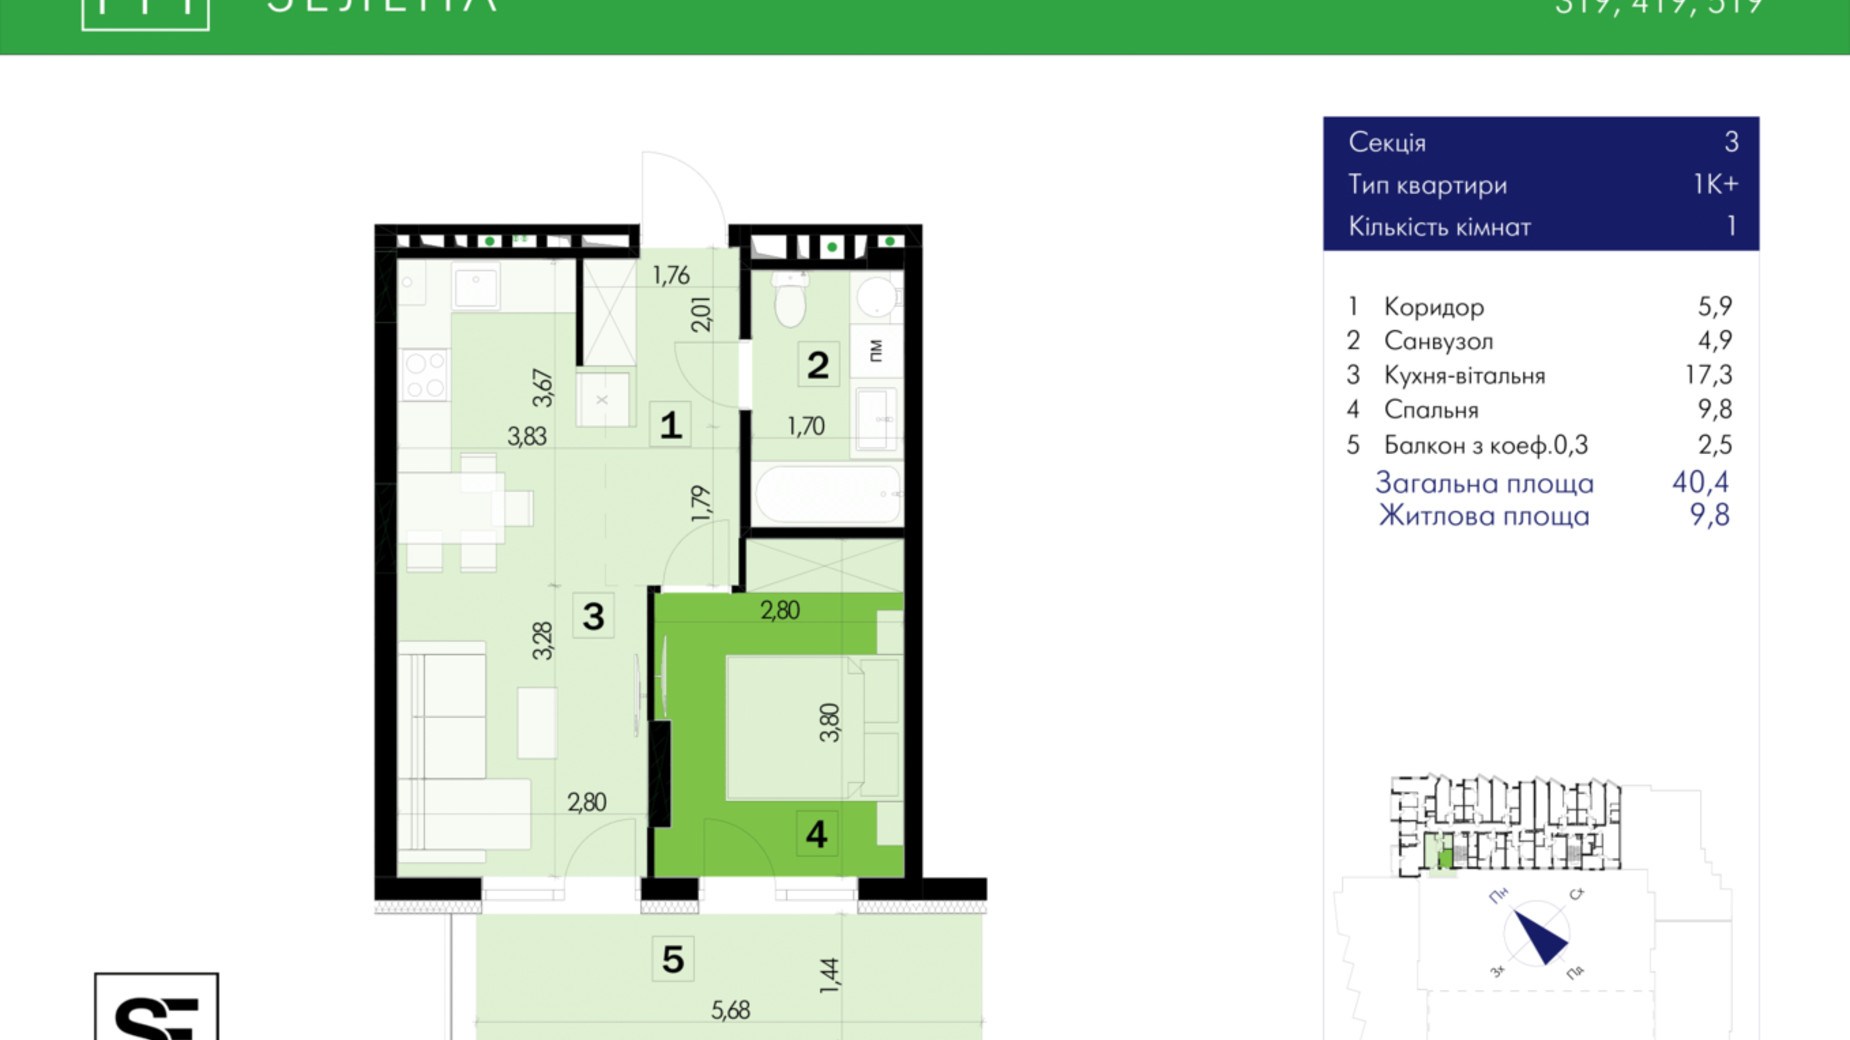 Планировка 1-комнатной квартиры в ЖК 111 Зеленая 40.4 м², фото 634027